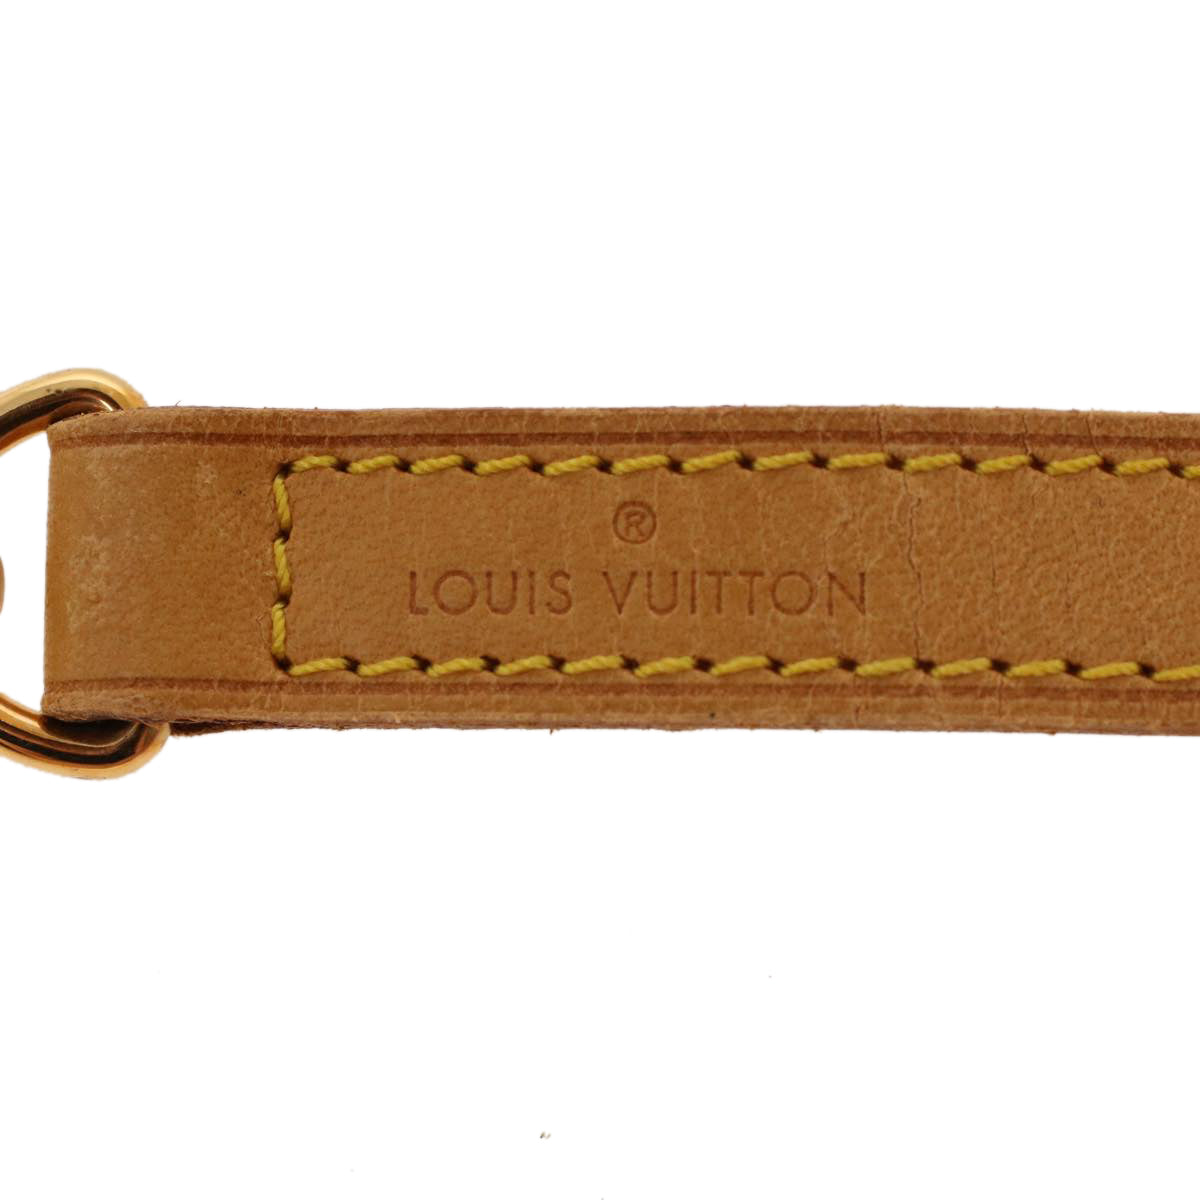 LOUIS VUITTON Shoulder Strap Leather 35.8"" Beige LV Auth 42030